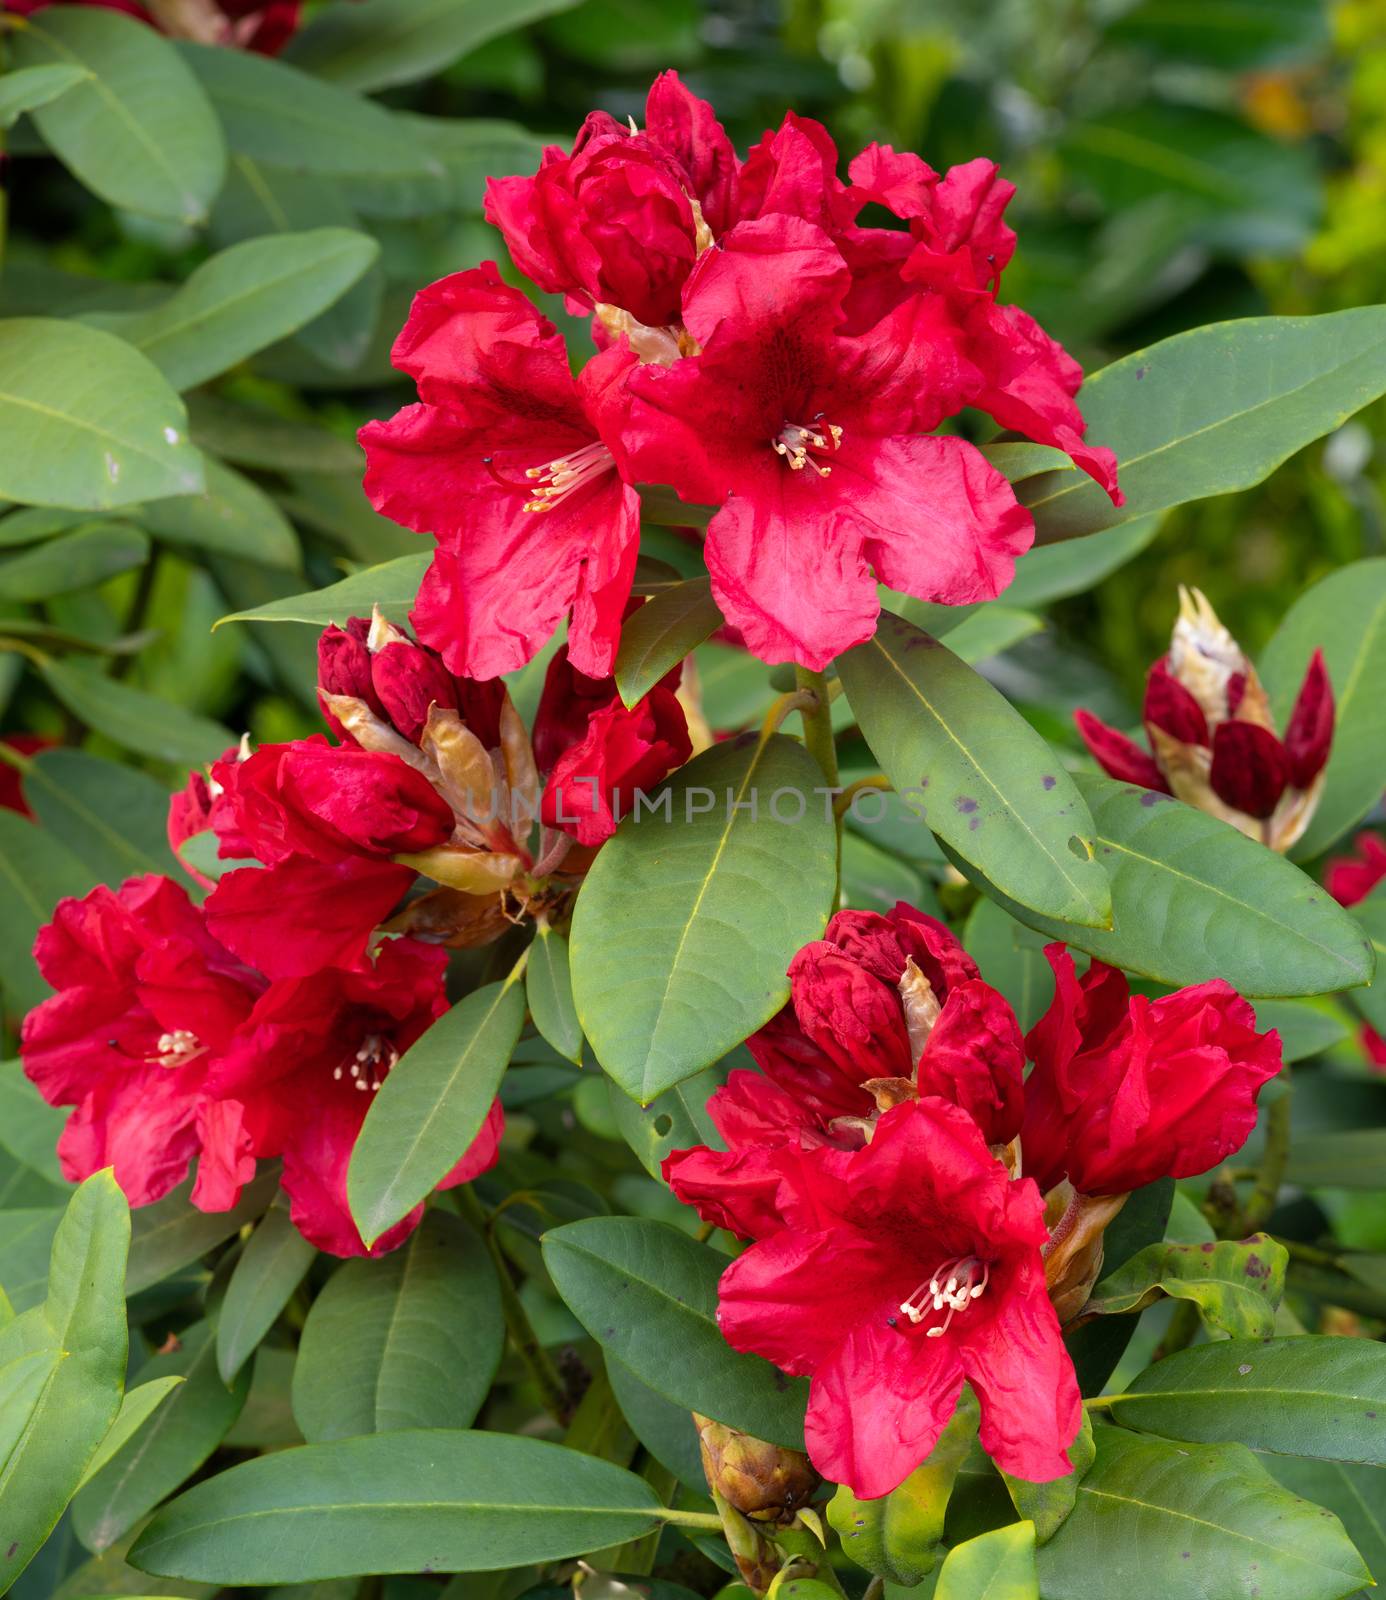 Rhododendron Hybrid Rabatz, Rhododendron hybrid by alfotokunst